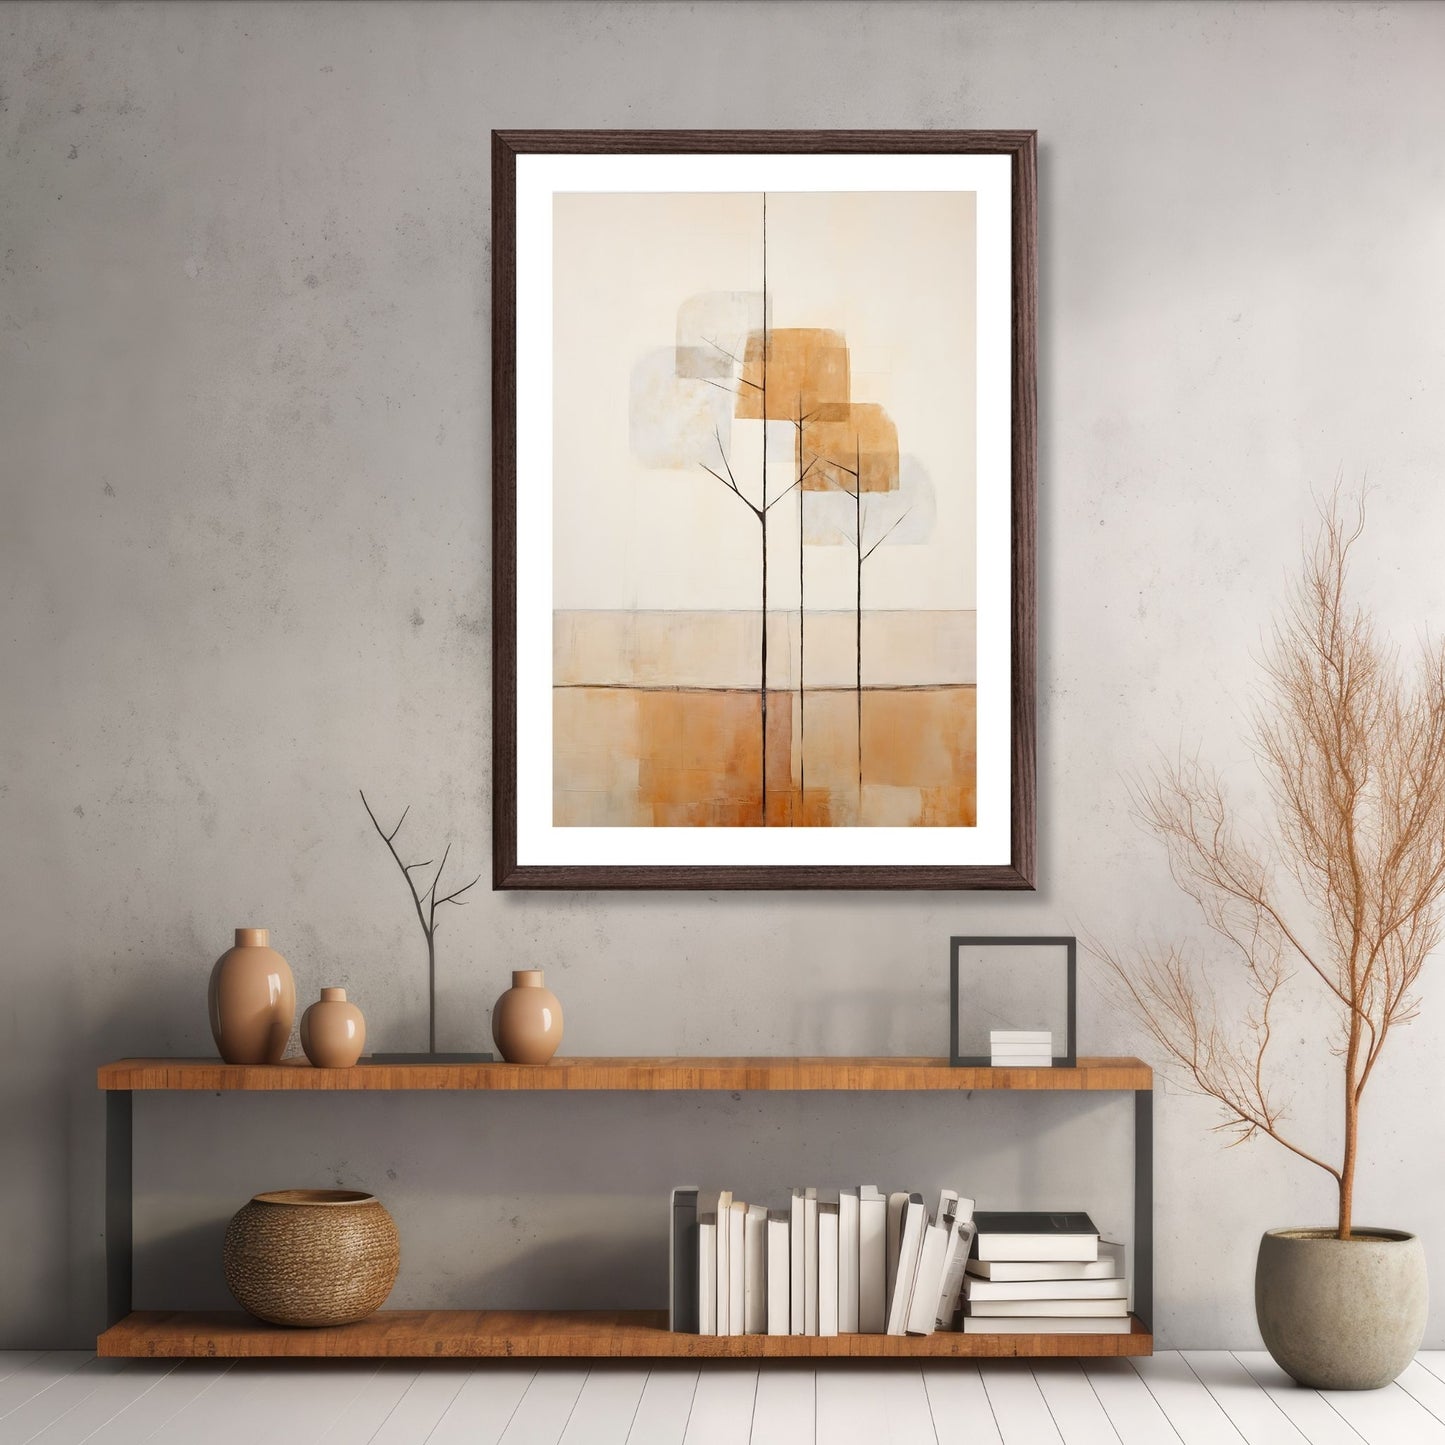 Abstract Forest - grafisk og abstrakt motiv av høye, slanke trær og skog i rust- og beige fargetoner. Illustrasjon av motiv i brun ramme.